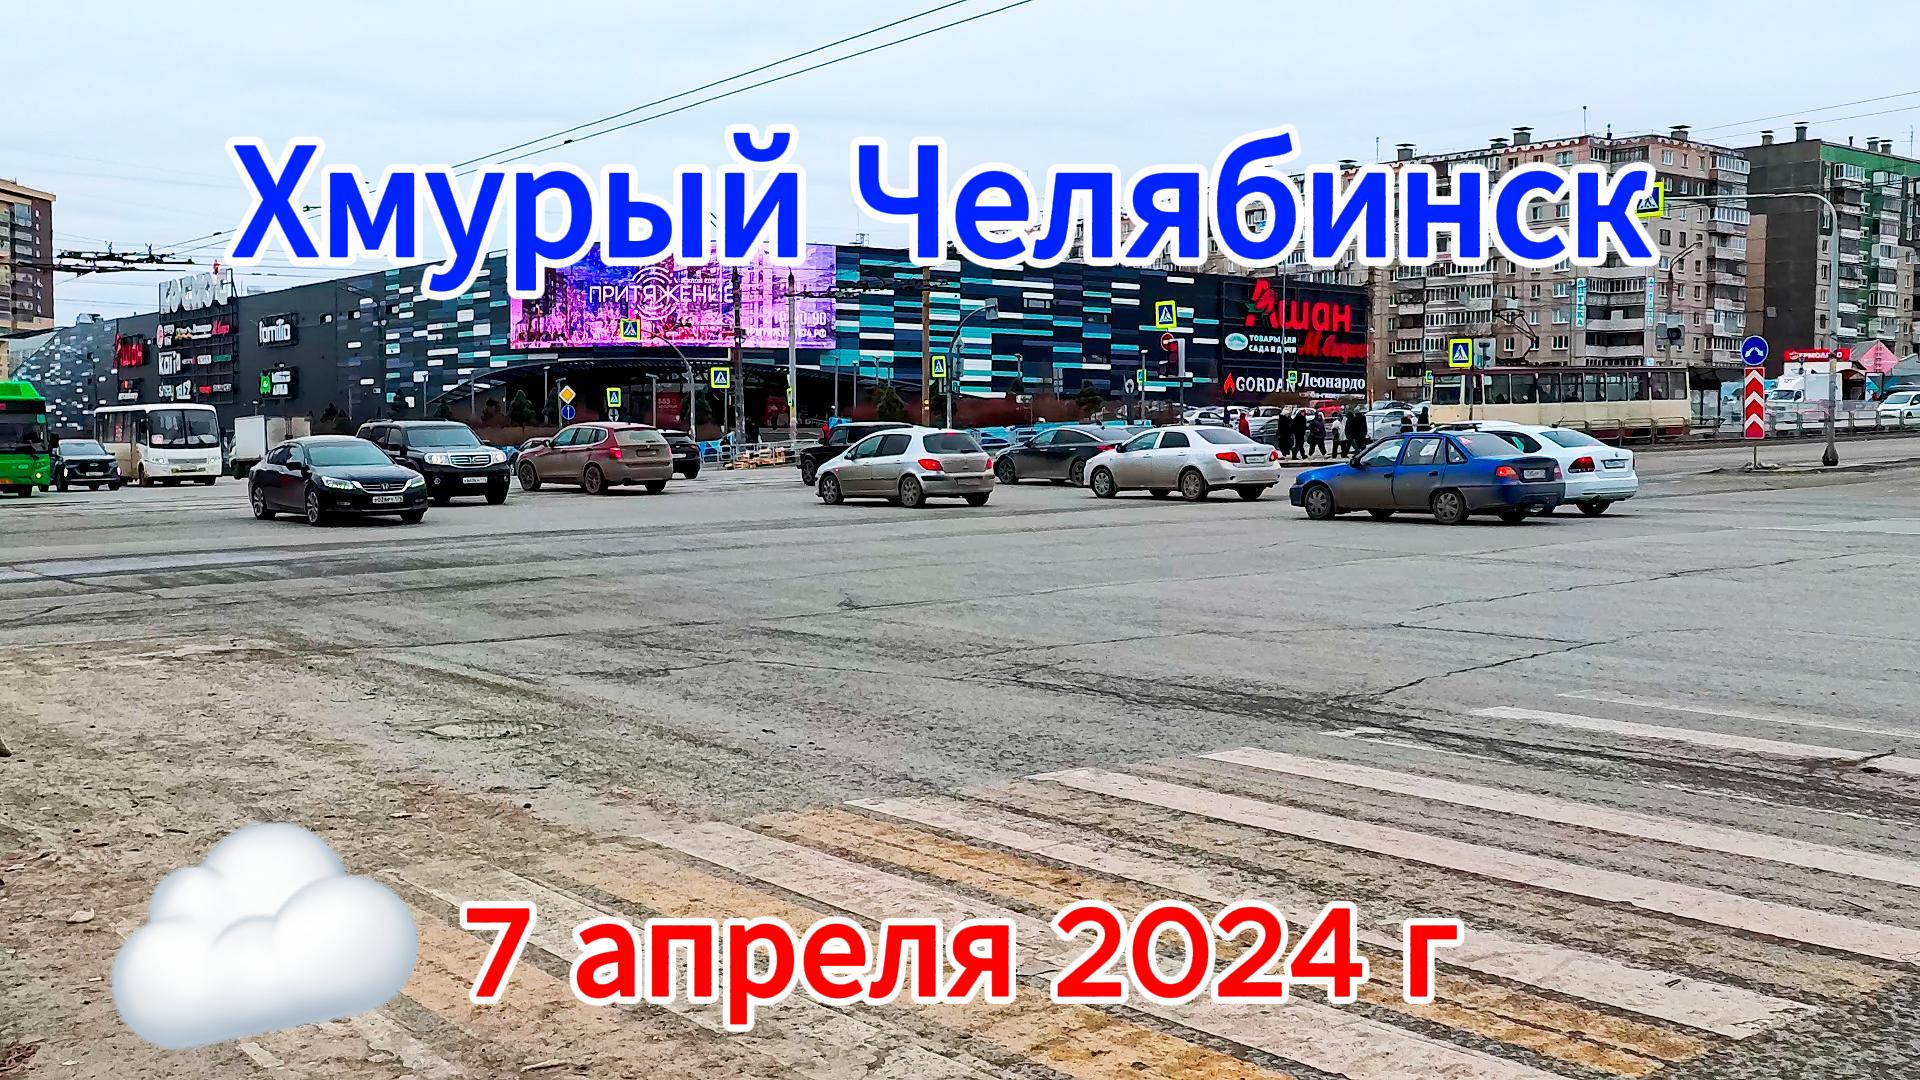 Хмурое воскресенье в Челябинске 7 апреля 2024(1)